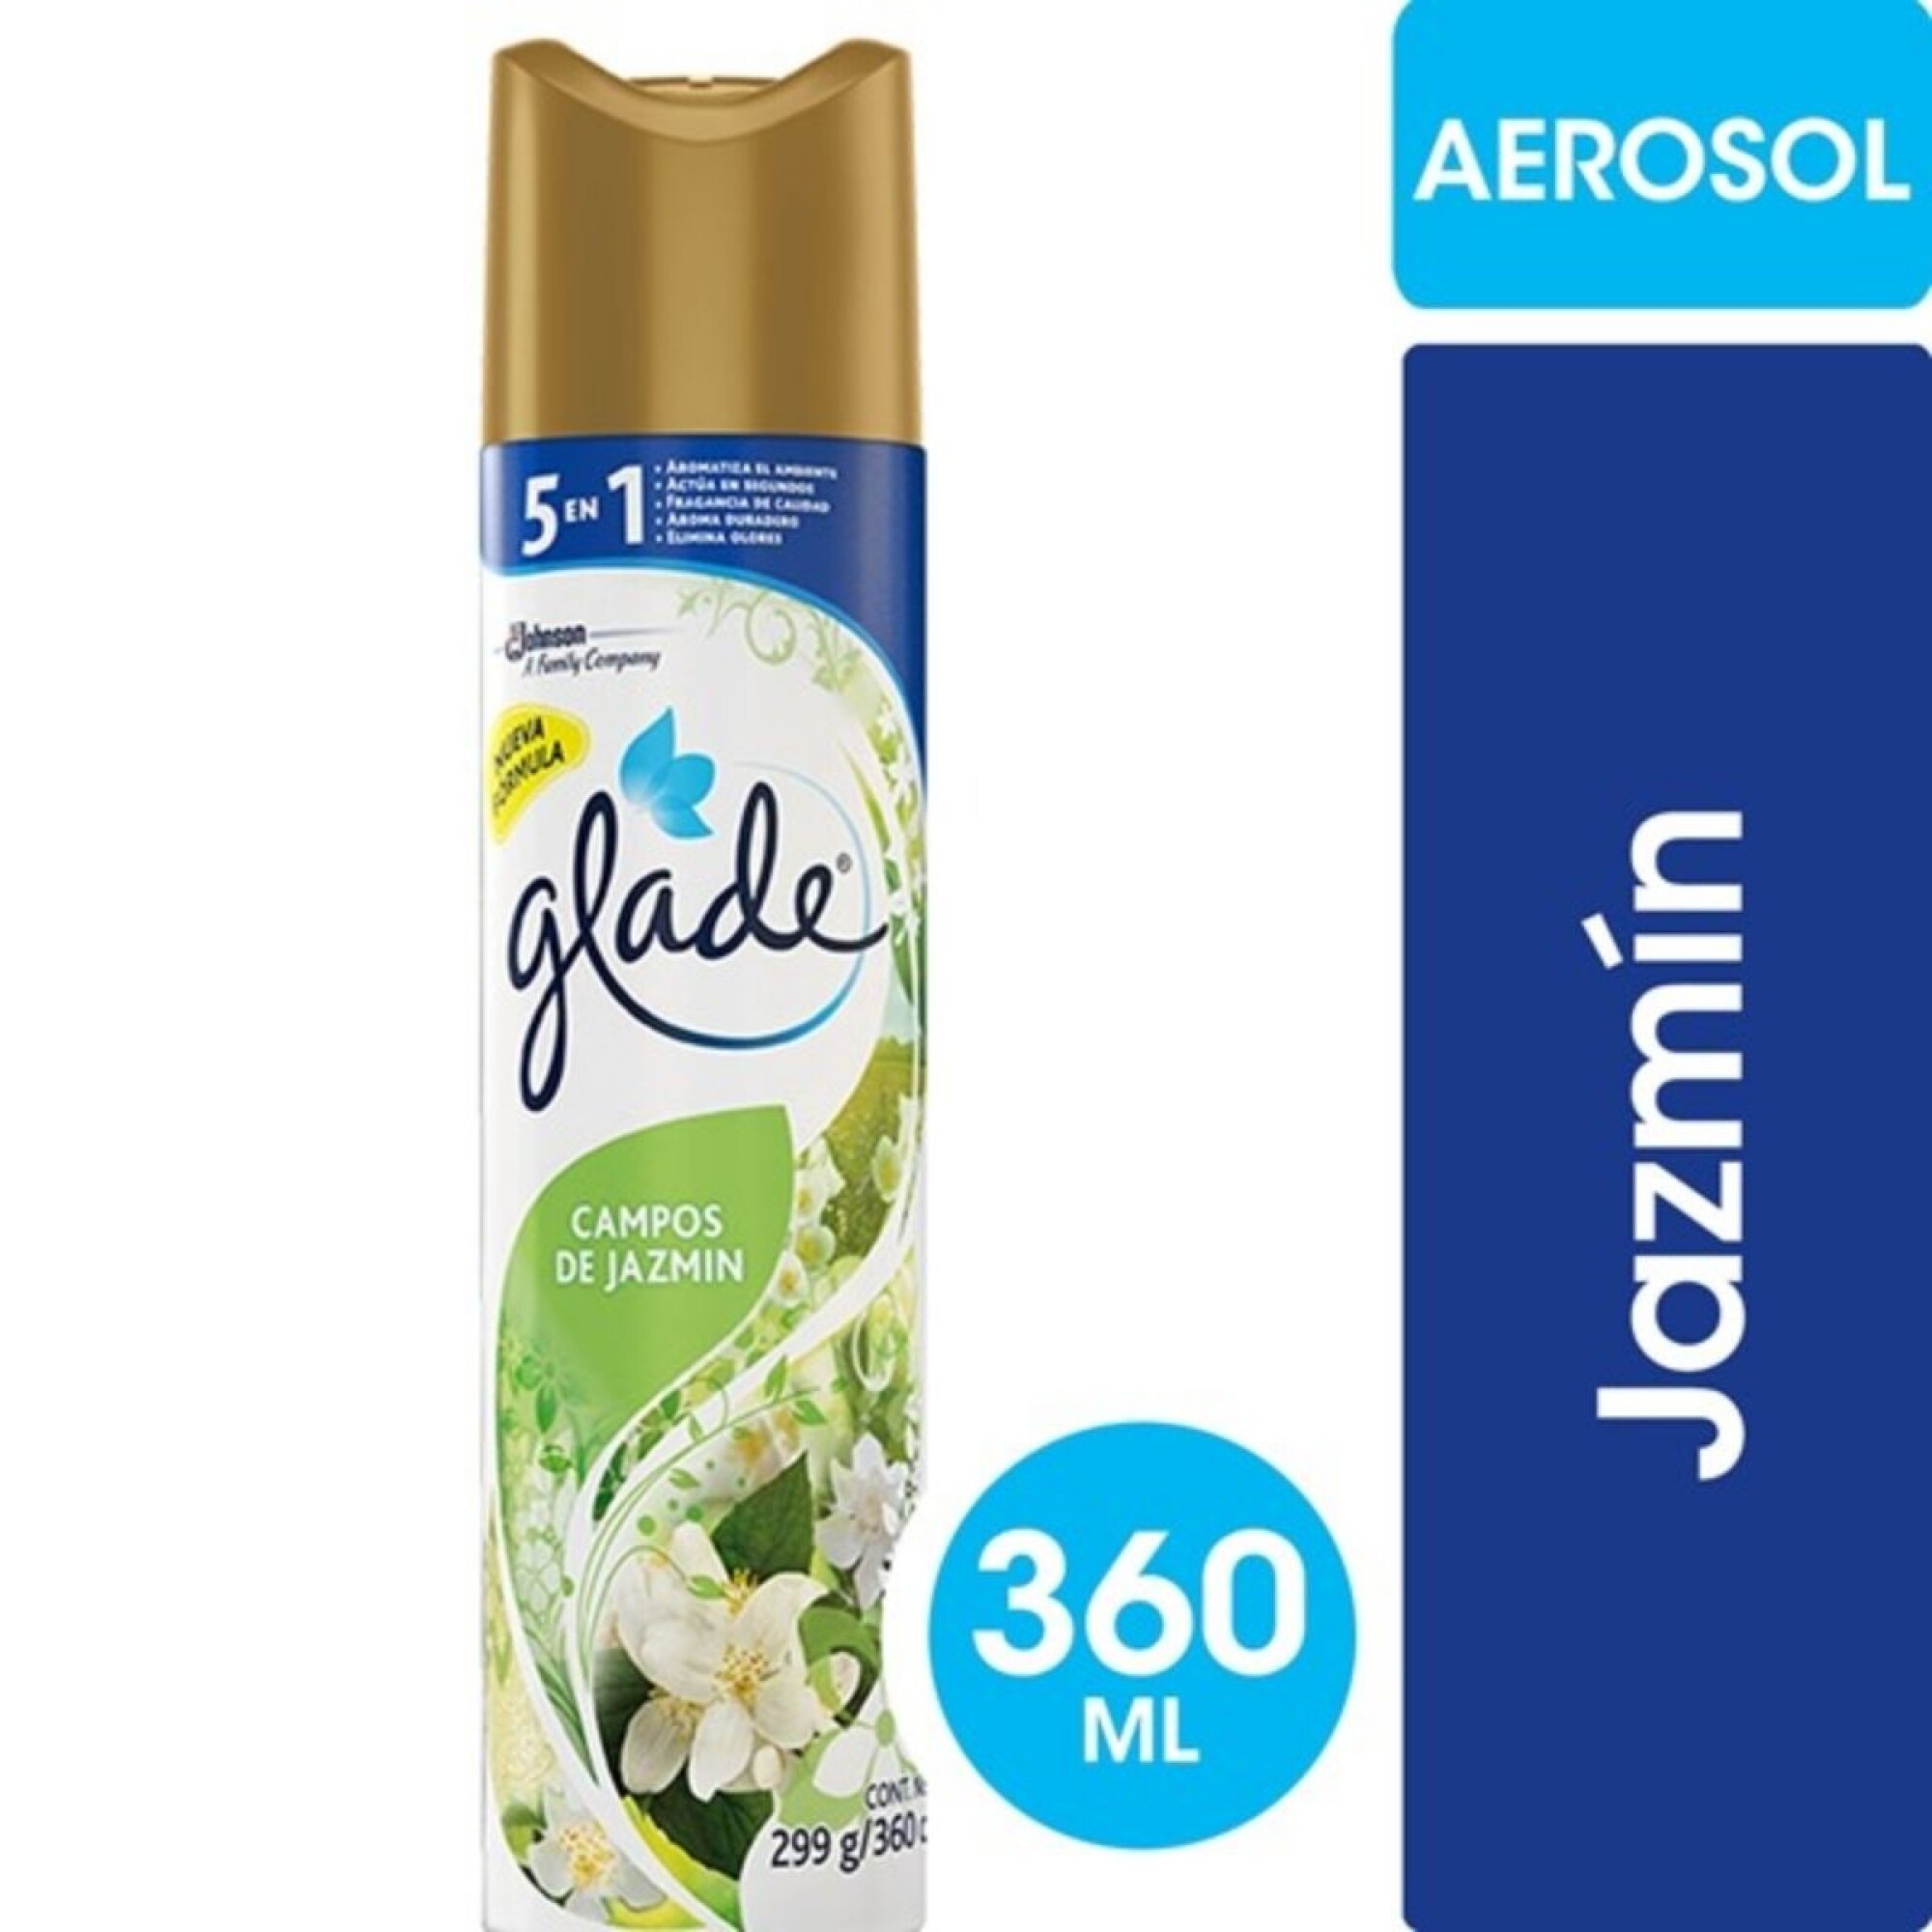 Desodorante de Ambiente Glade Aerosol - Campos de Jazmín 360 ML — Coral